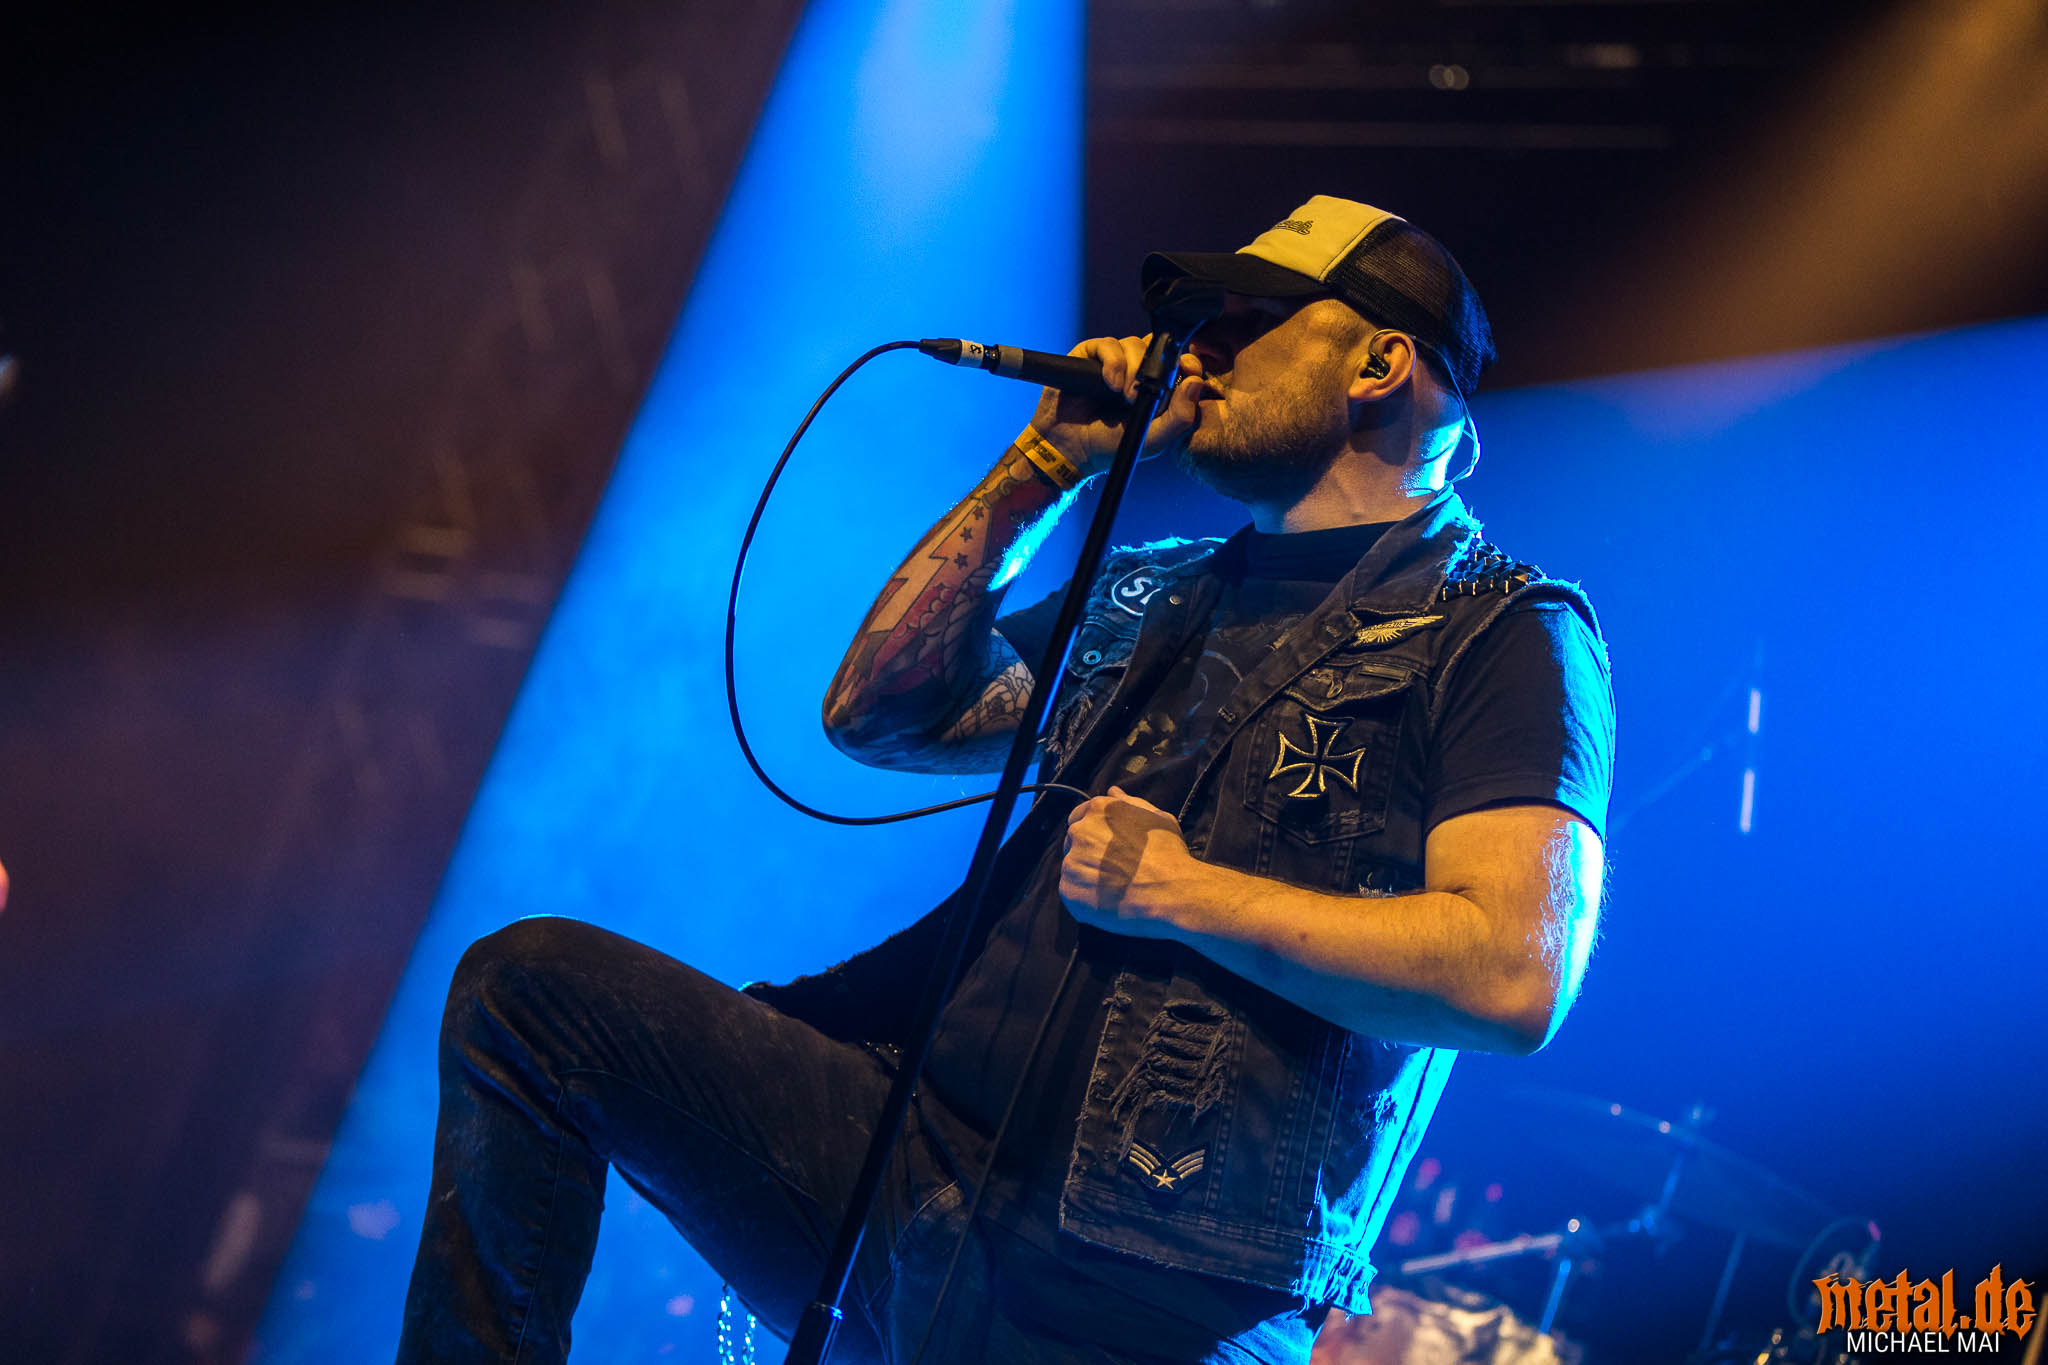 Konzertfoto von Motorjesus auf dem Ruhrpott Metal Meeting 2018